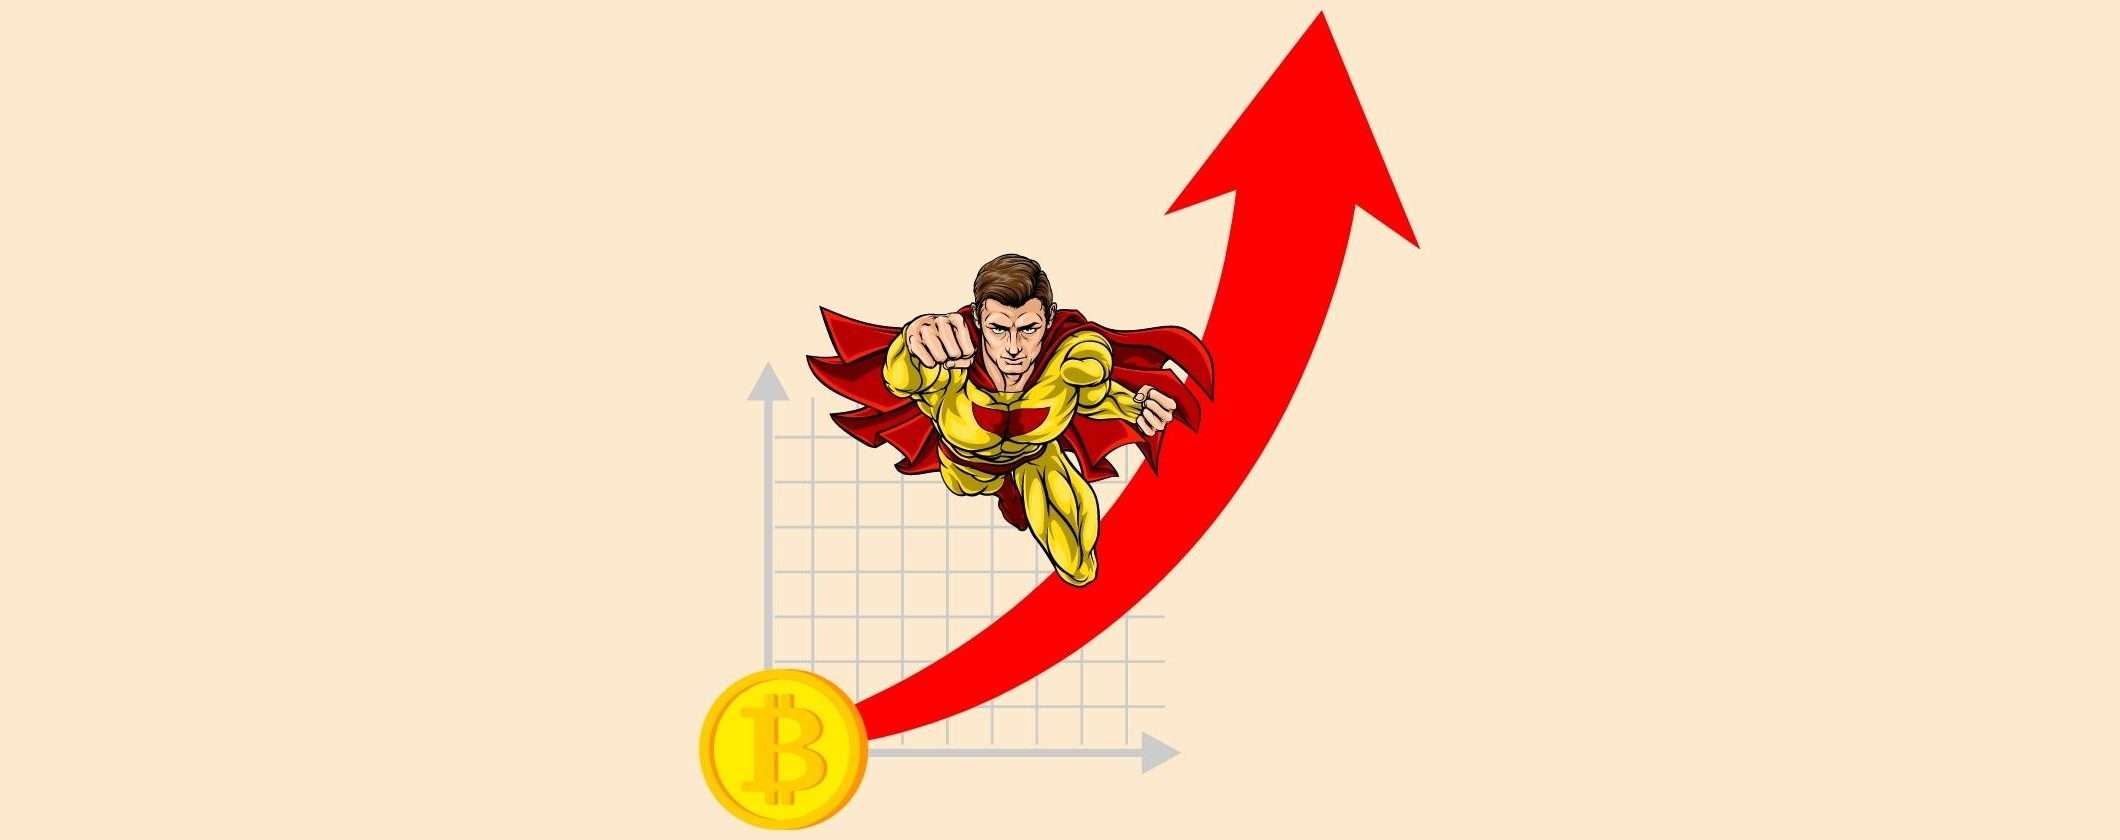 Il prezzo di Bitcoin sarà molto più alto di oggi: ecco le ultime previsioni